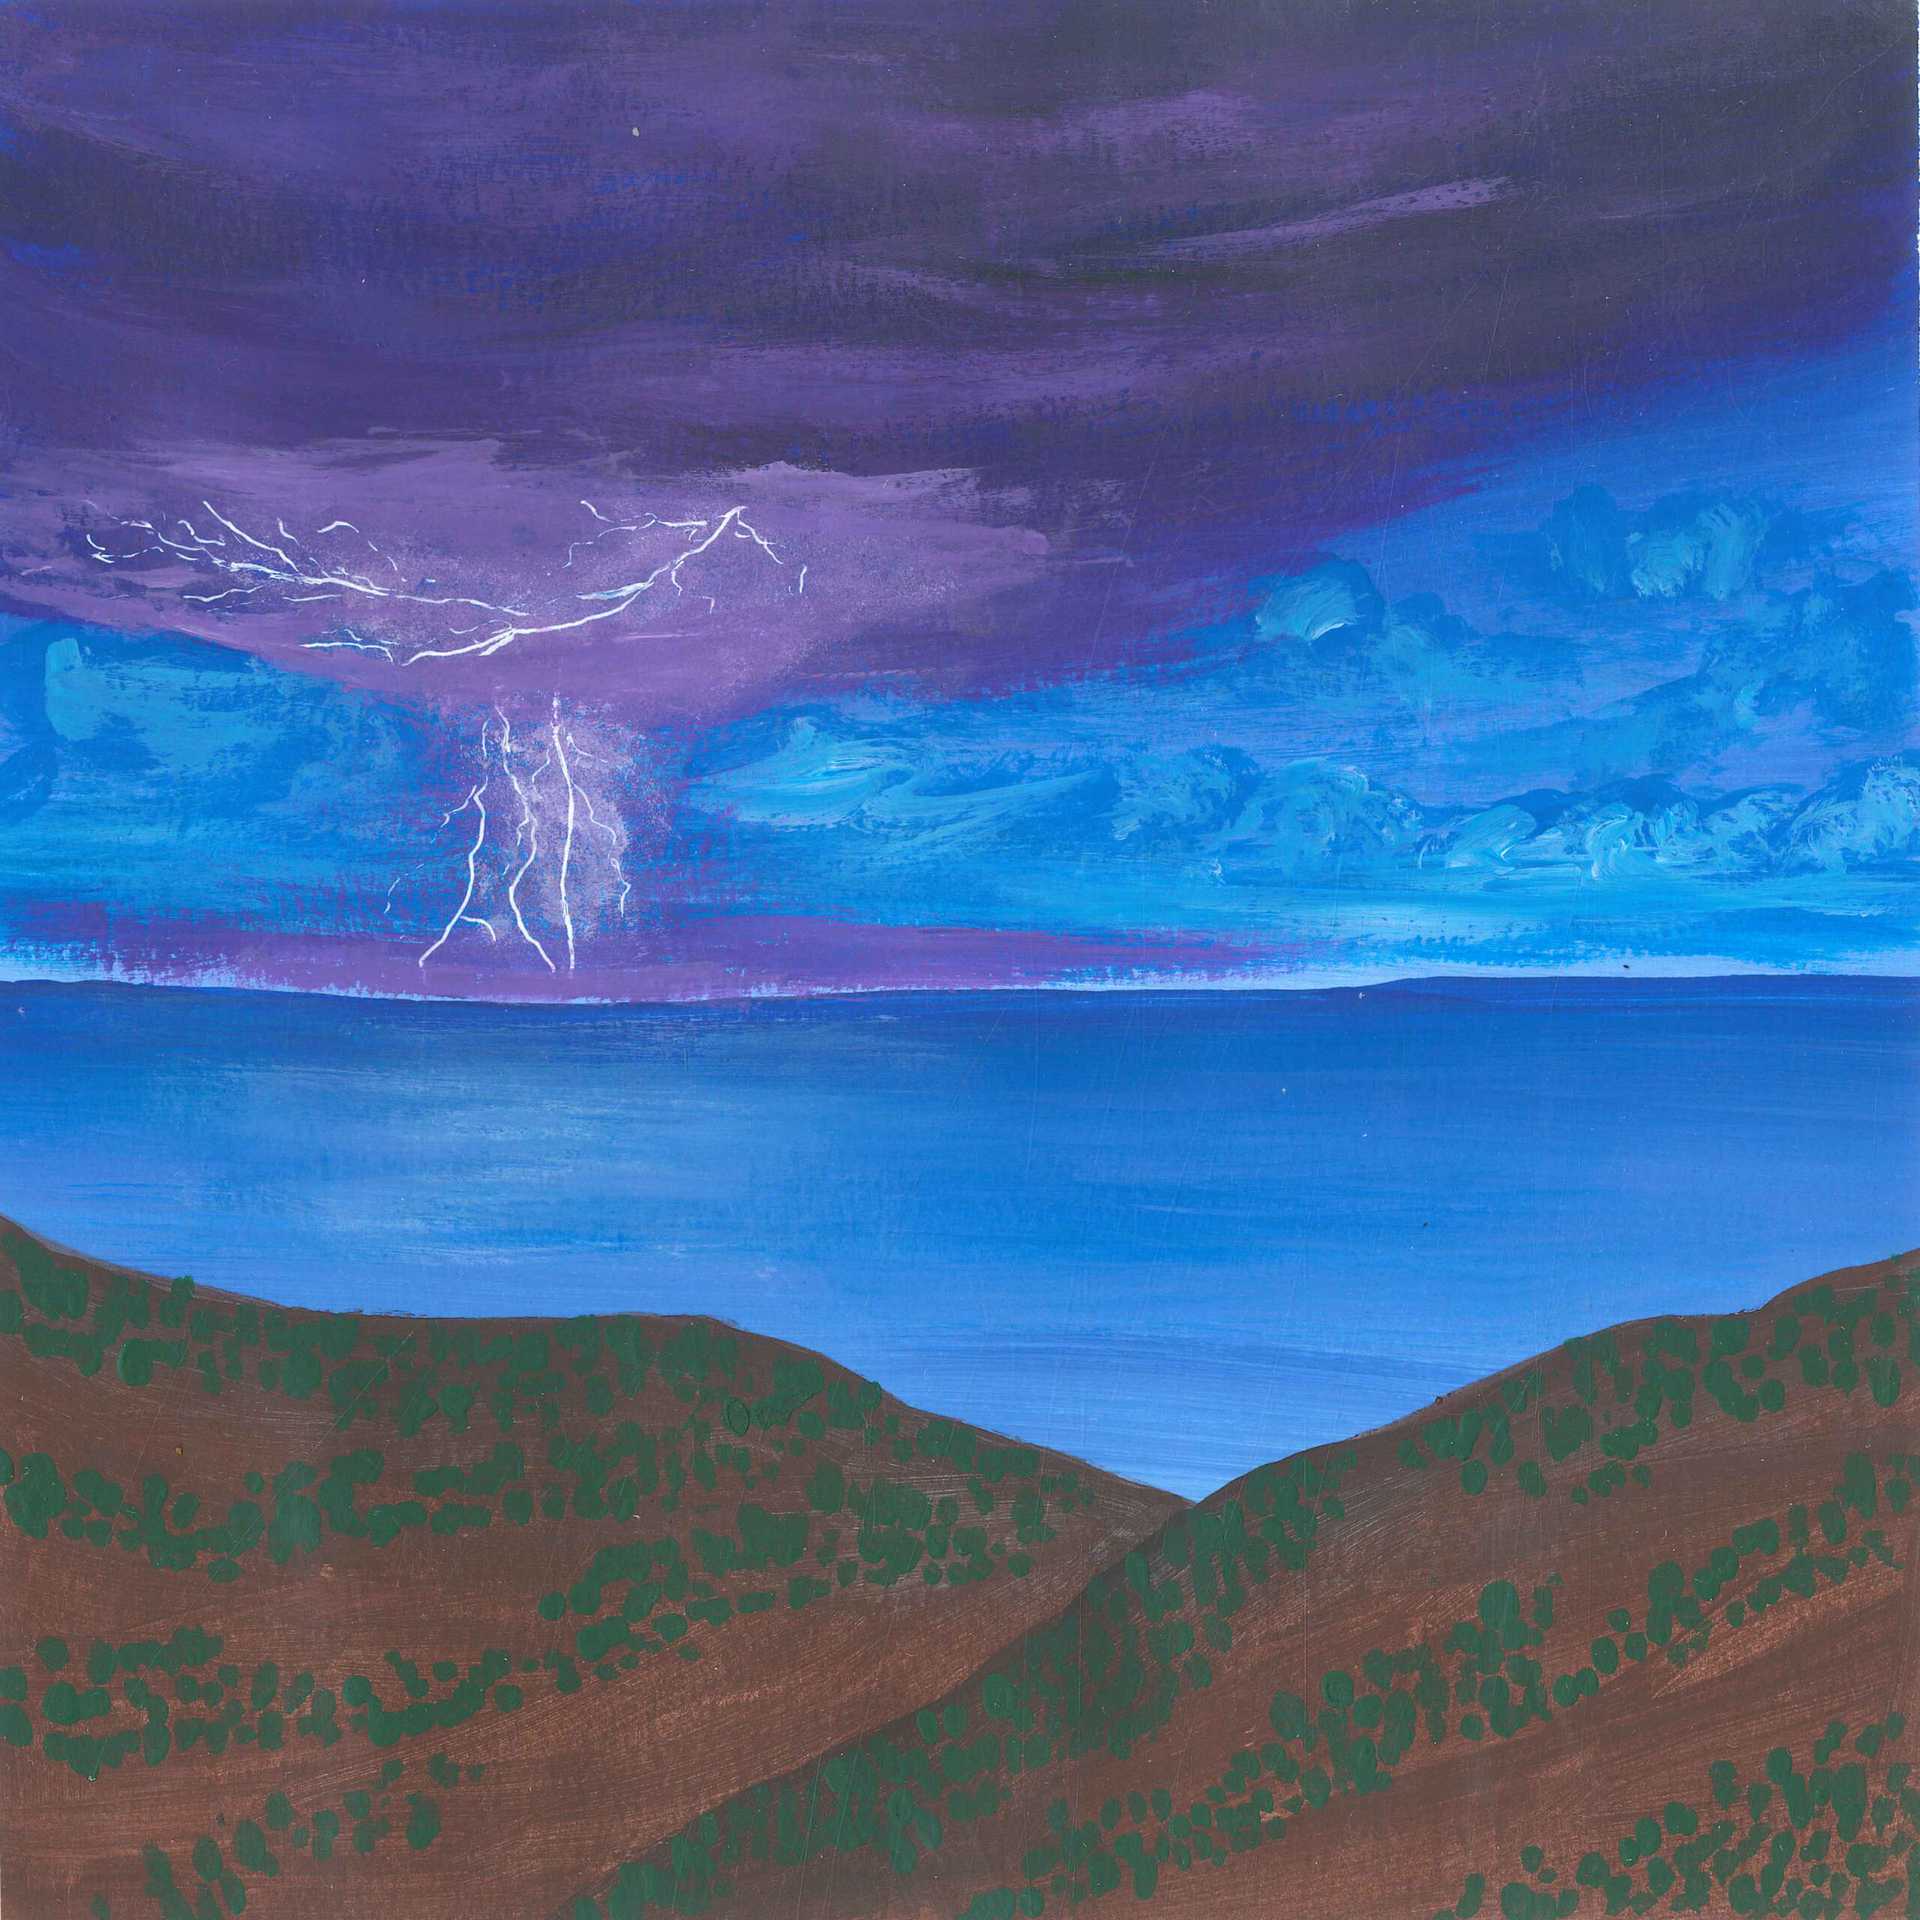 Storm in Velebit Mountain - earth.fm